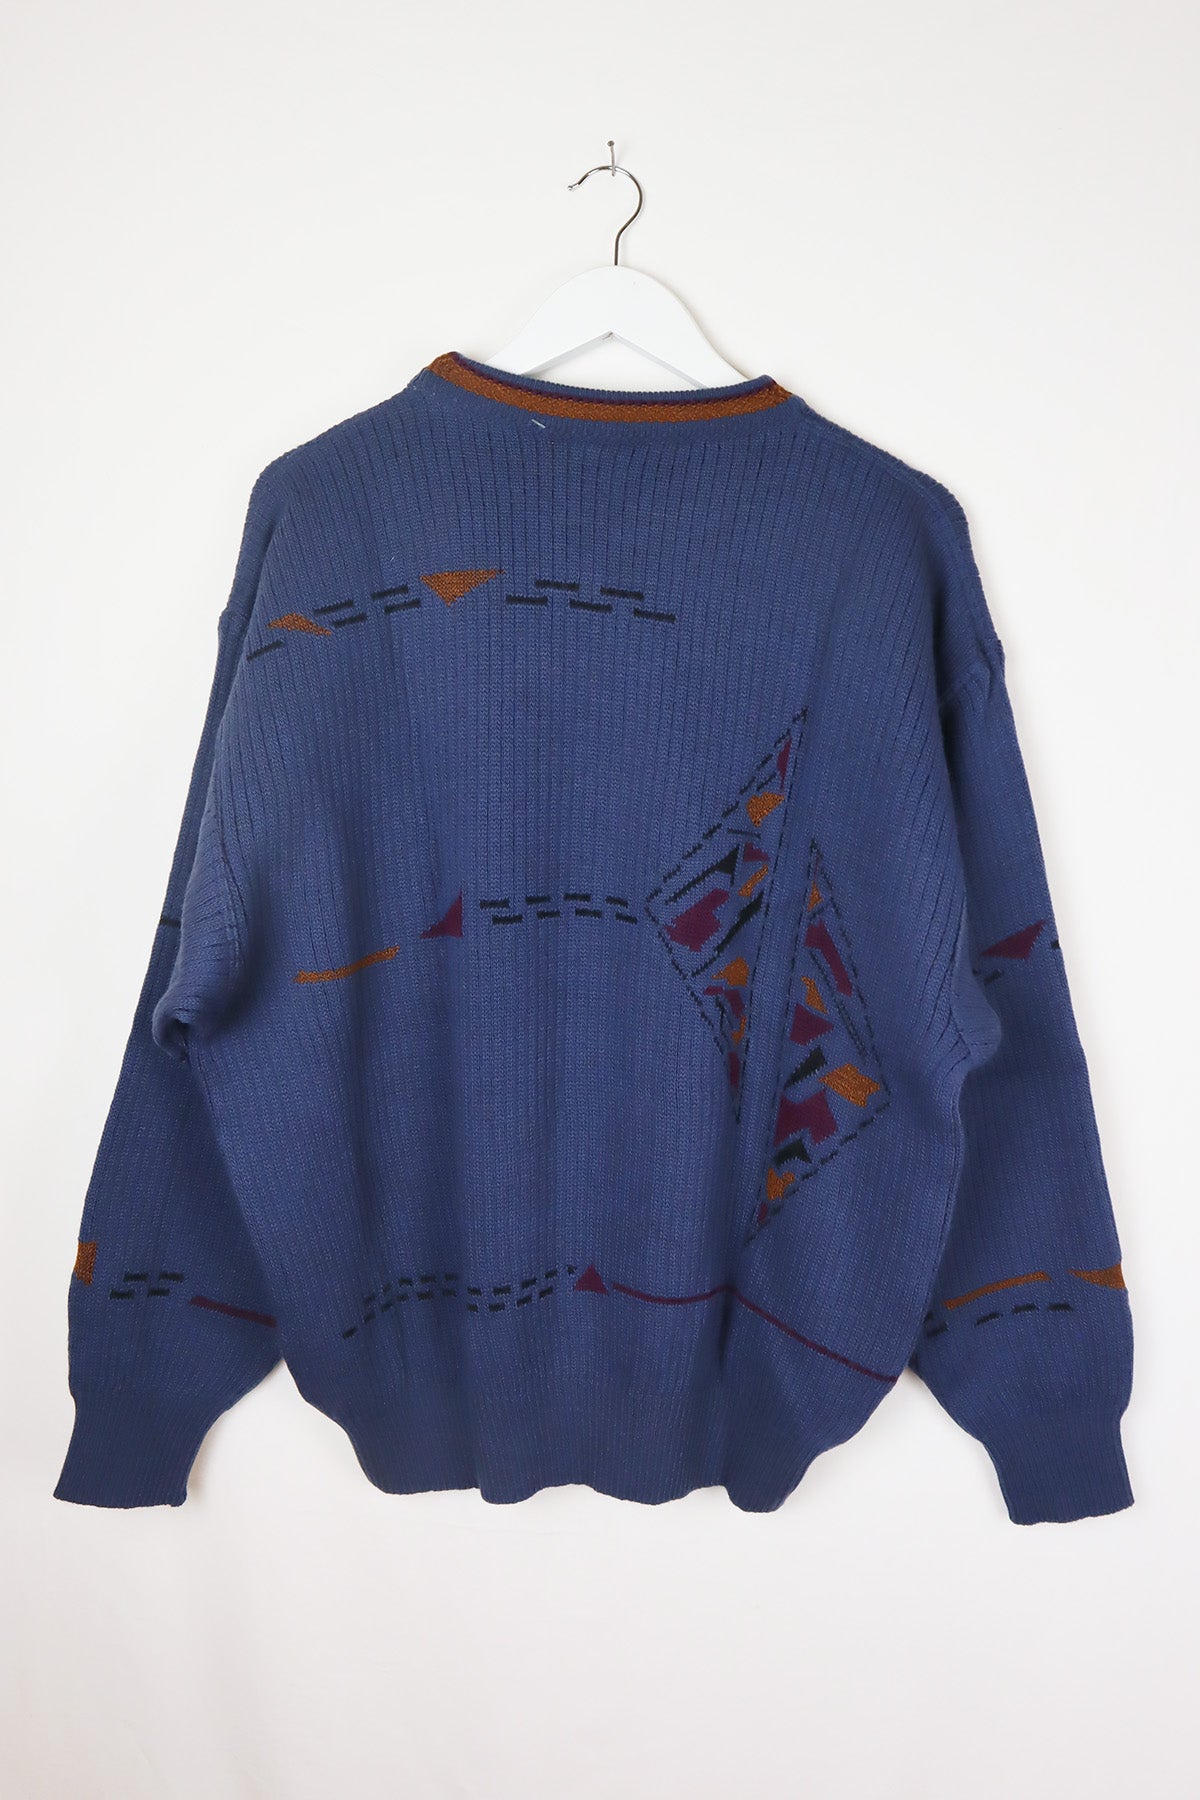 Unisex Vintage Pullover Blau Abstrakt ( Gr. L )